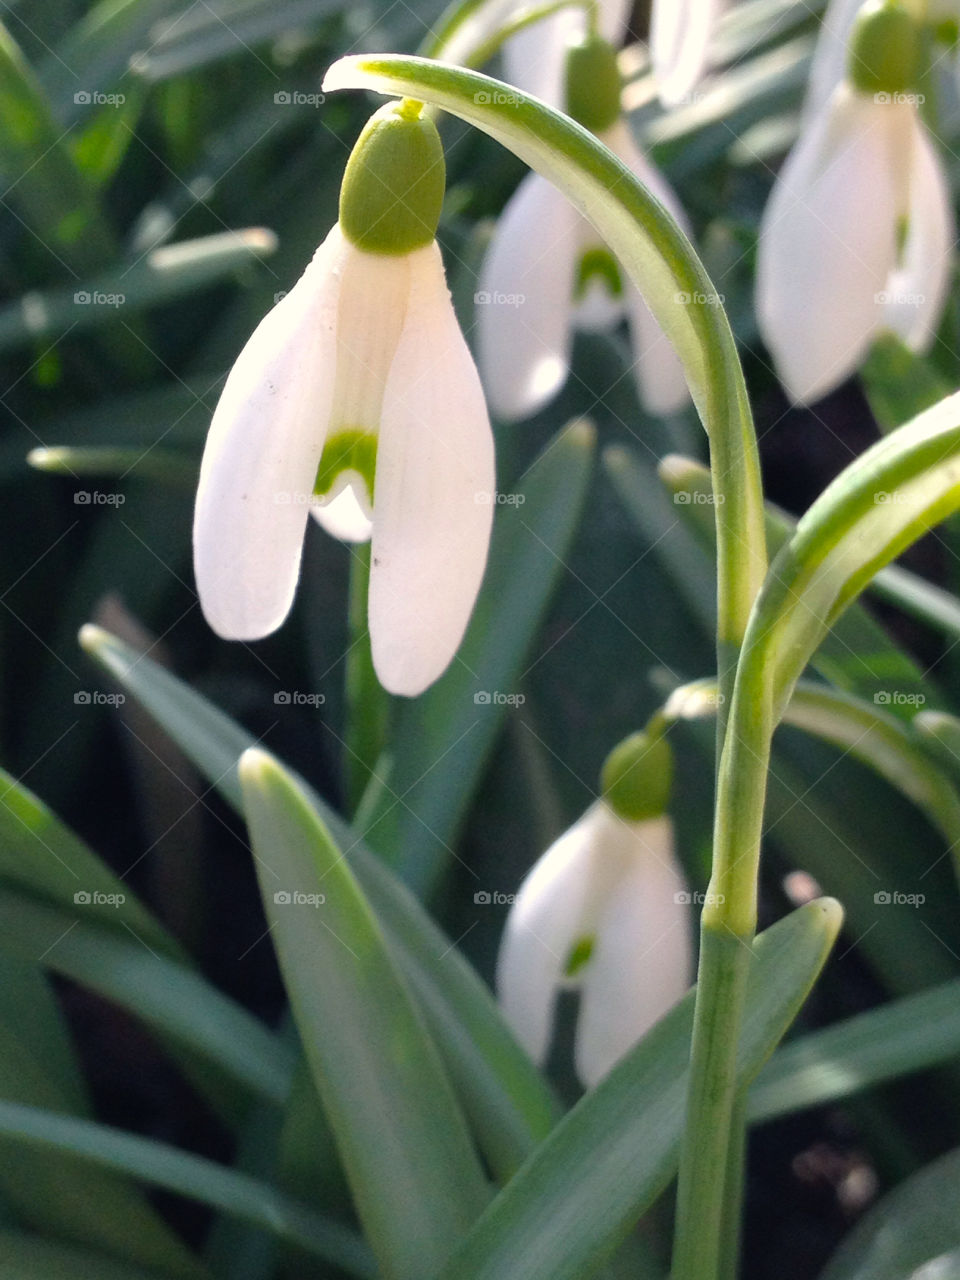 White flower growing on feild